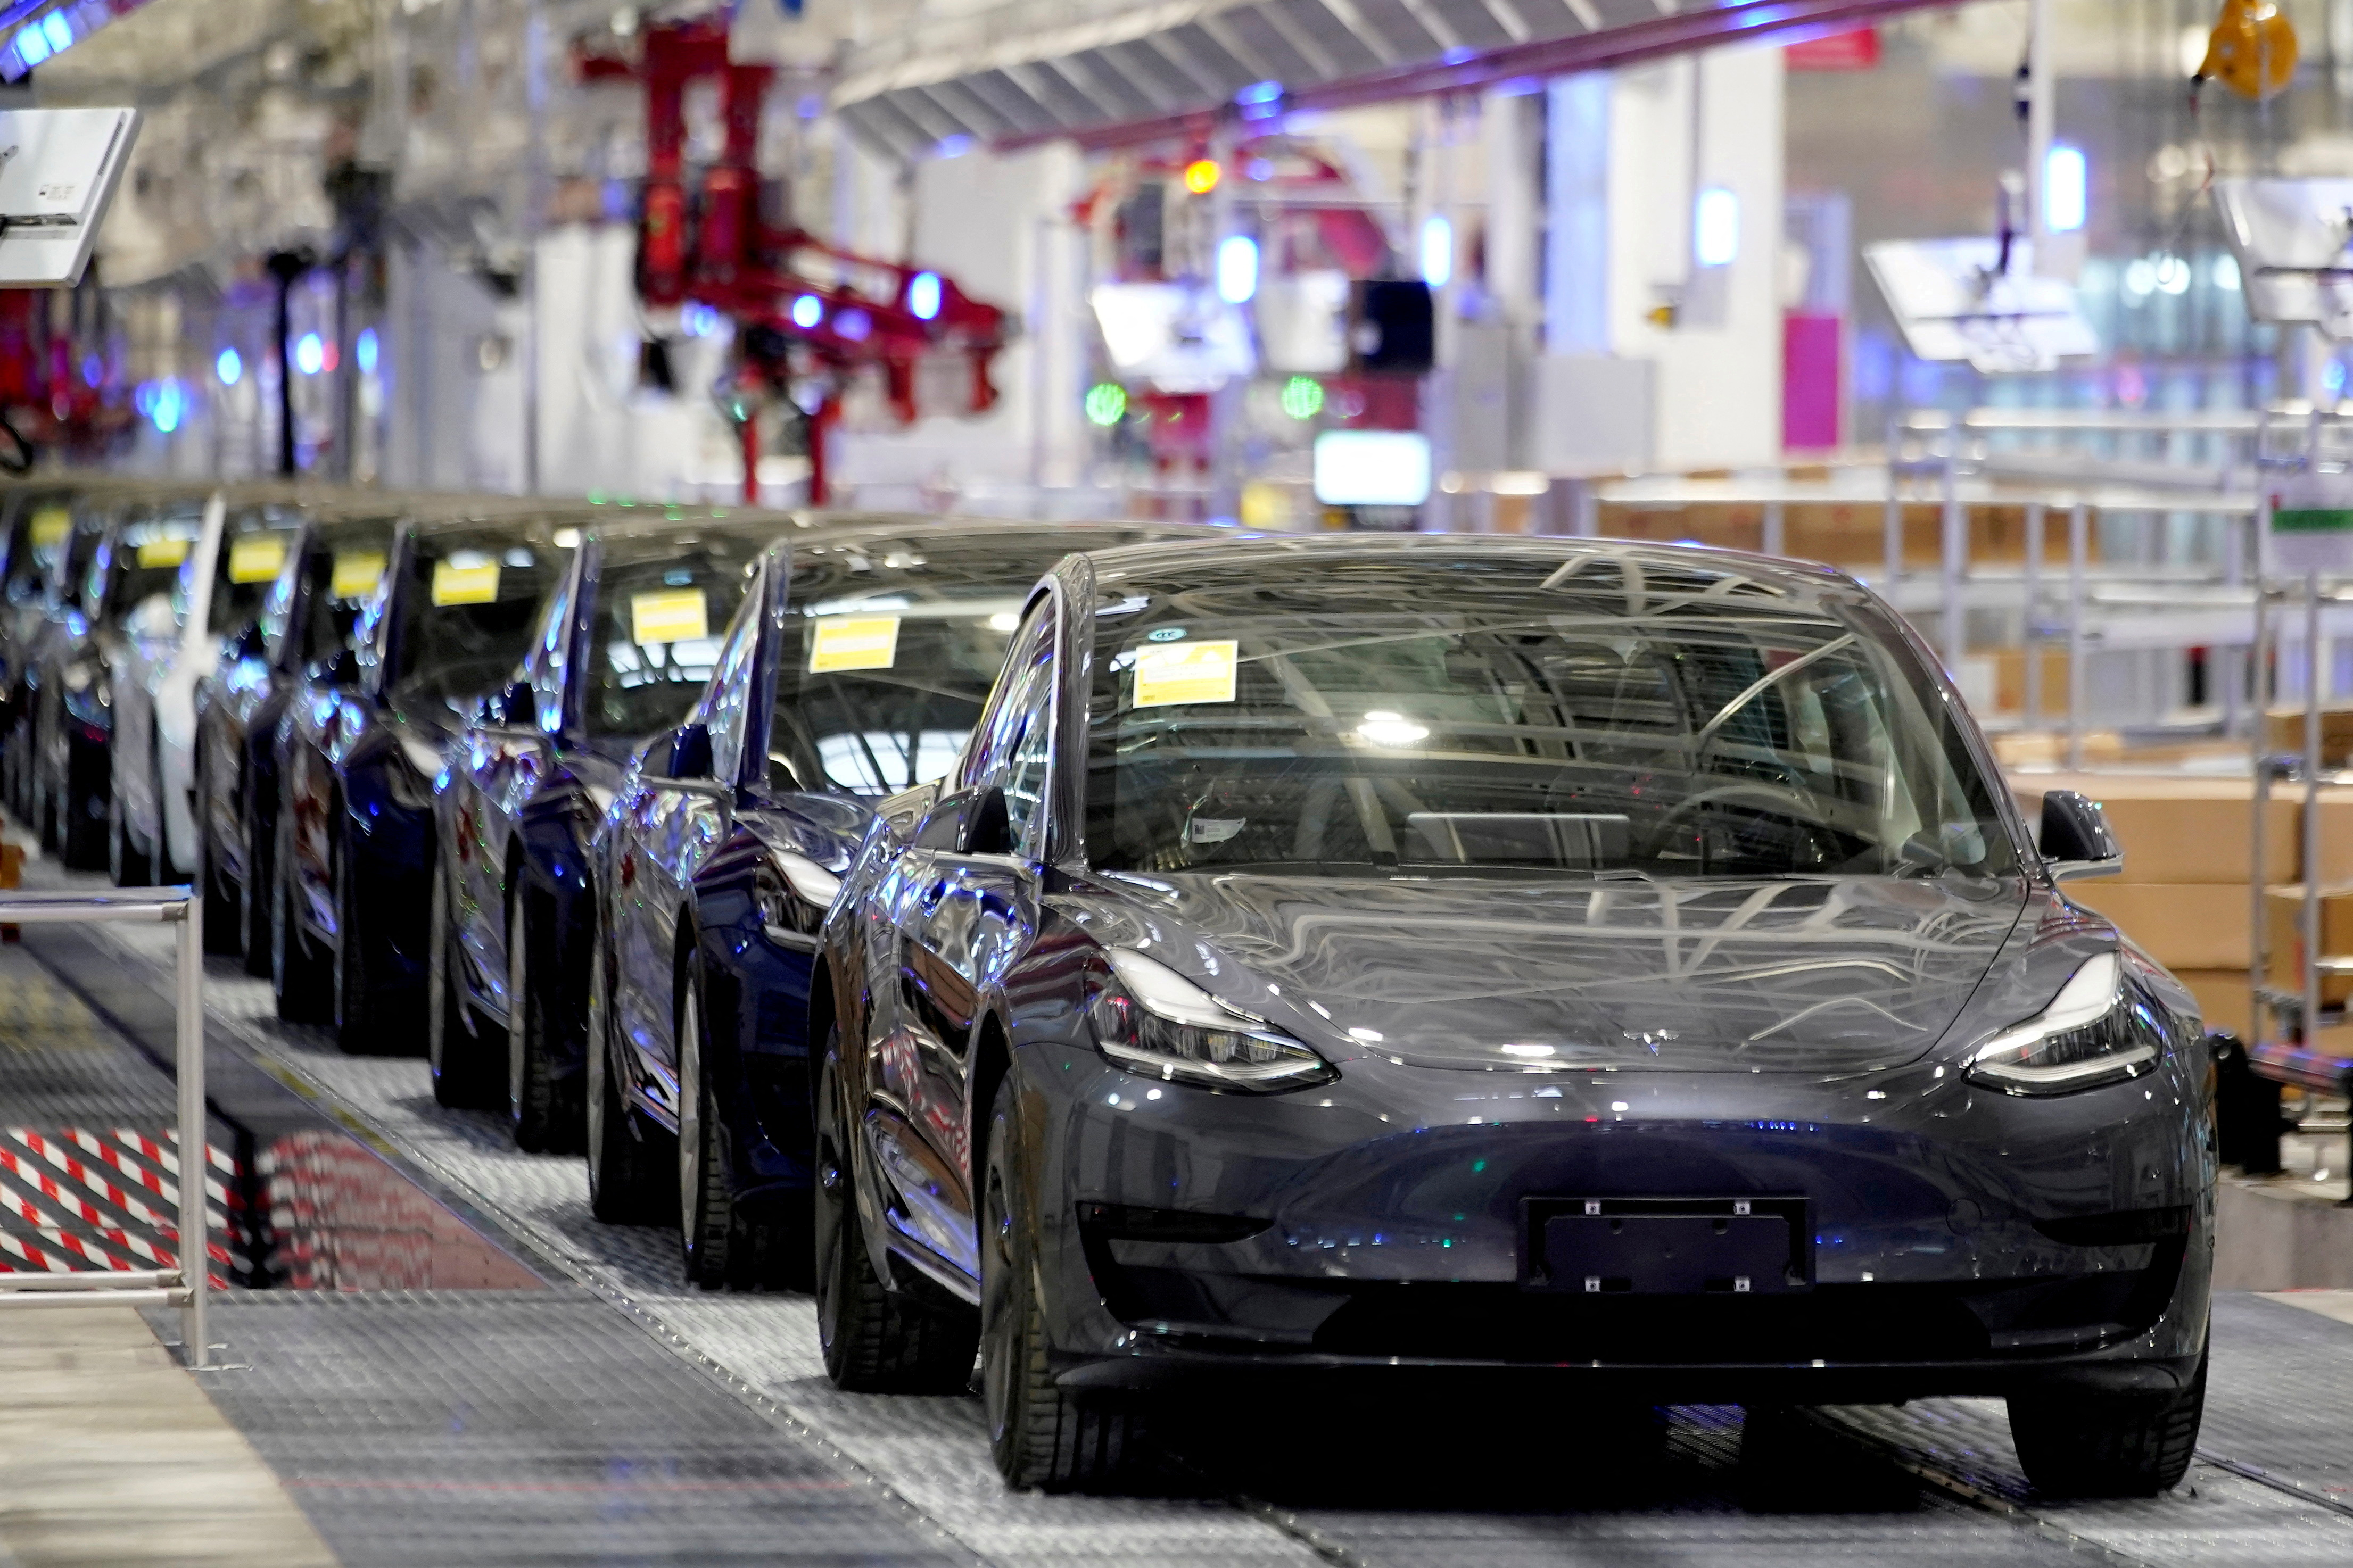 DATEIFOTO: Teslas in China hergestellte Fahrzeuge des Modells 3 werden am 7. Januar 2020 während einer Auslieferungsveranstaltung in seinem Werk in Shanghai, China, gesehen.  REUTERS/Aly Song/Dateifoto